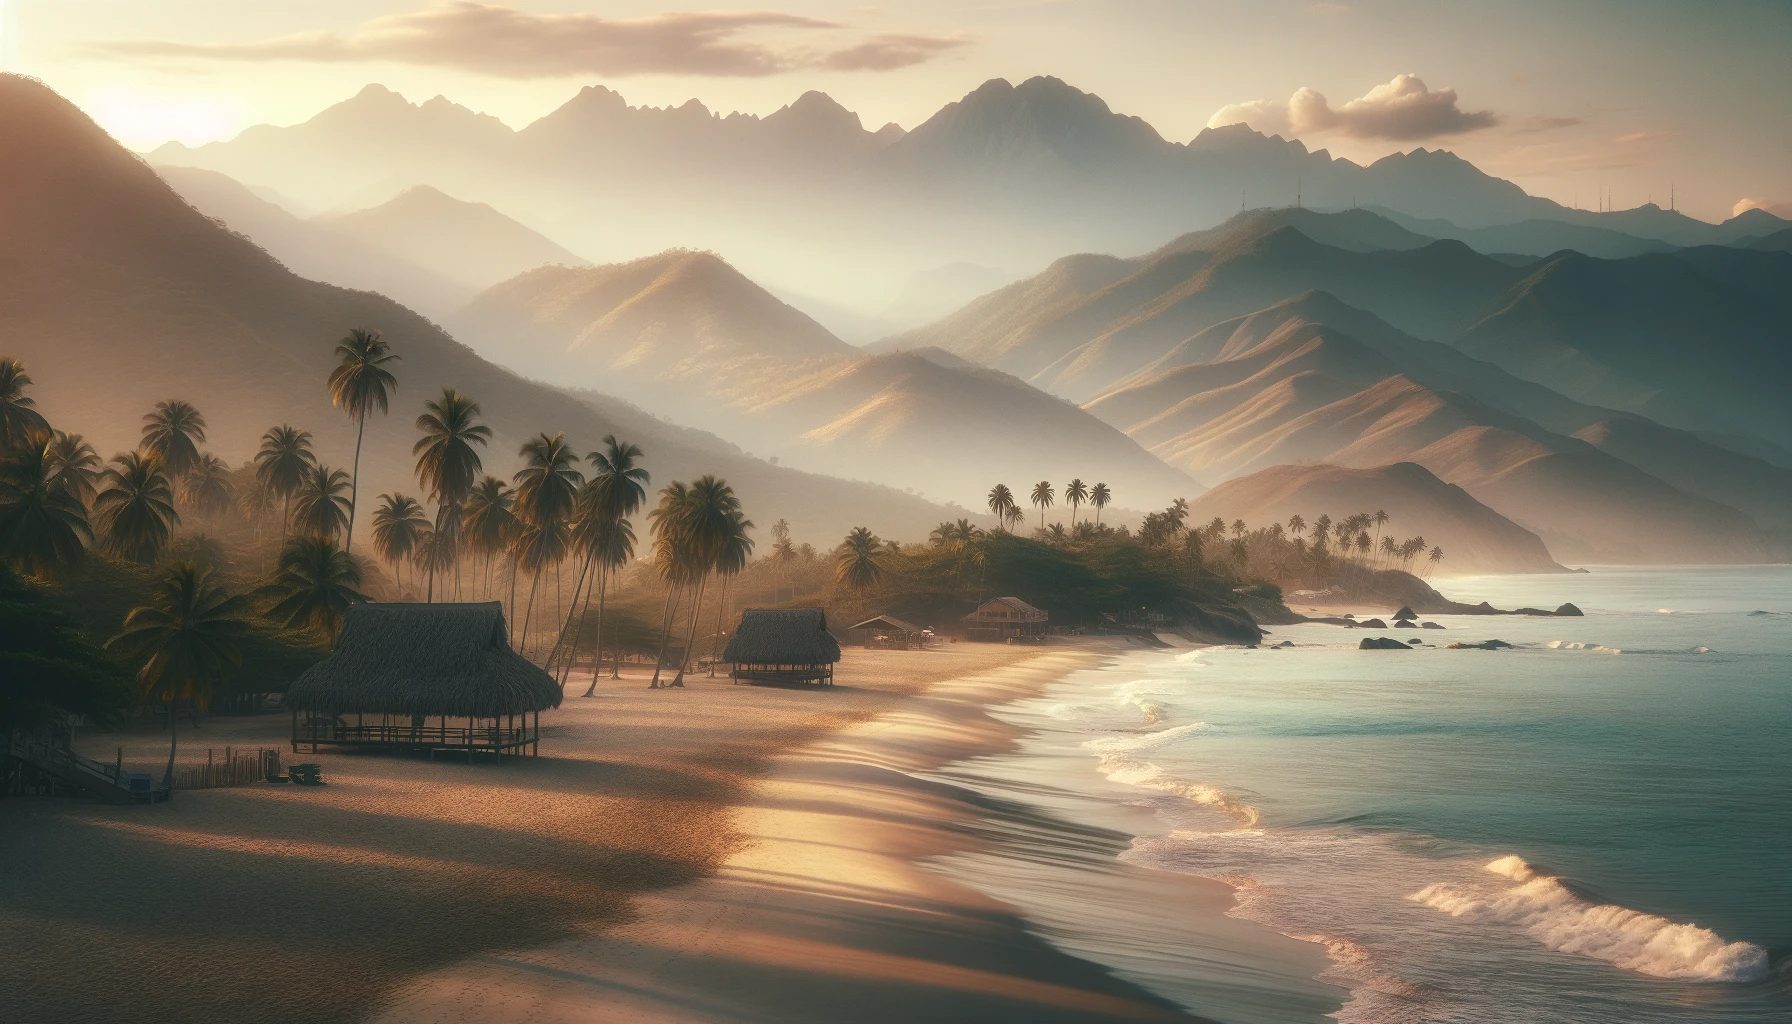 Coucher de soleil sur une plage tropicale avec des montagnes et des palmiers.